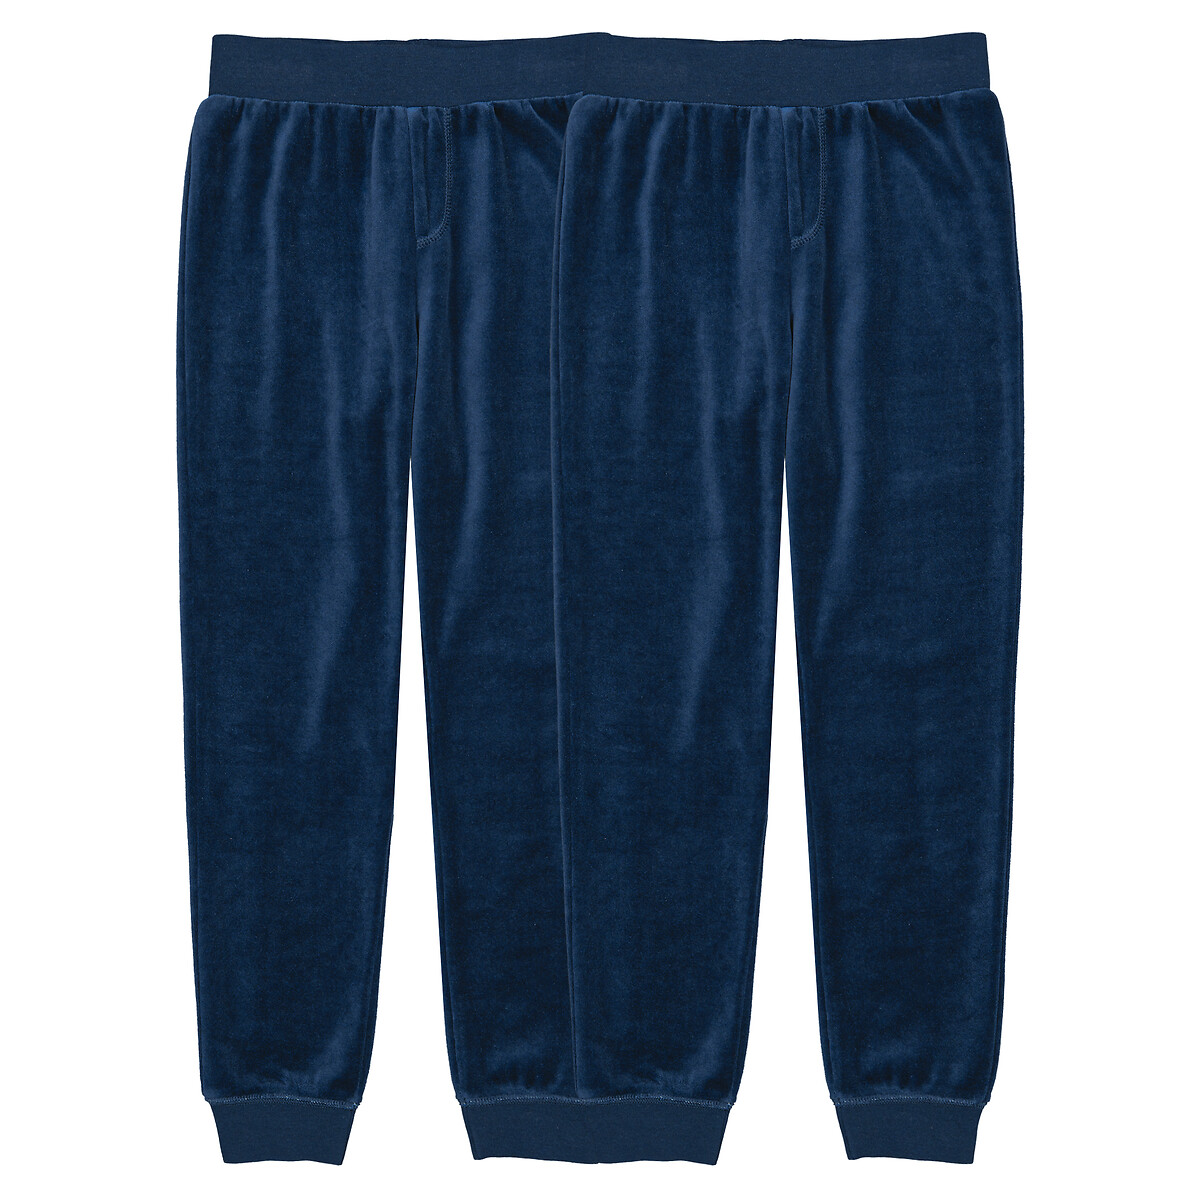 Комплект из двух брюк пижамных из велюра 3 года - 94 см синий брюки из велюра 1 мес 3 года 3 года 94 см синий